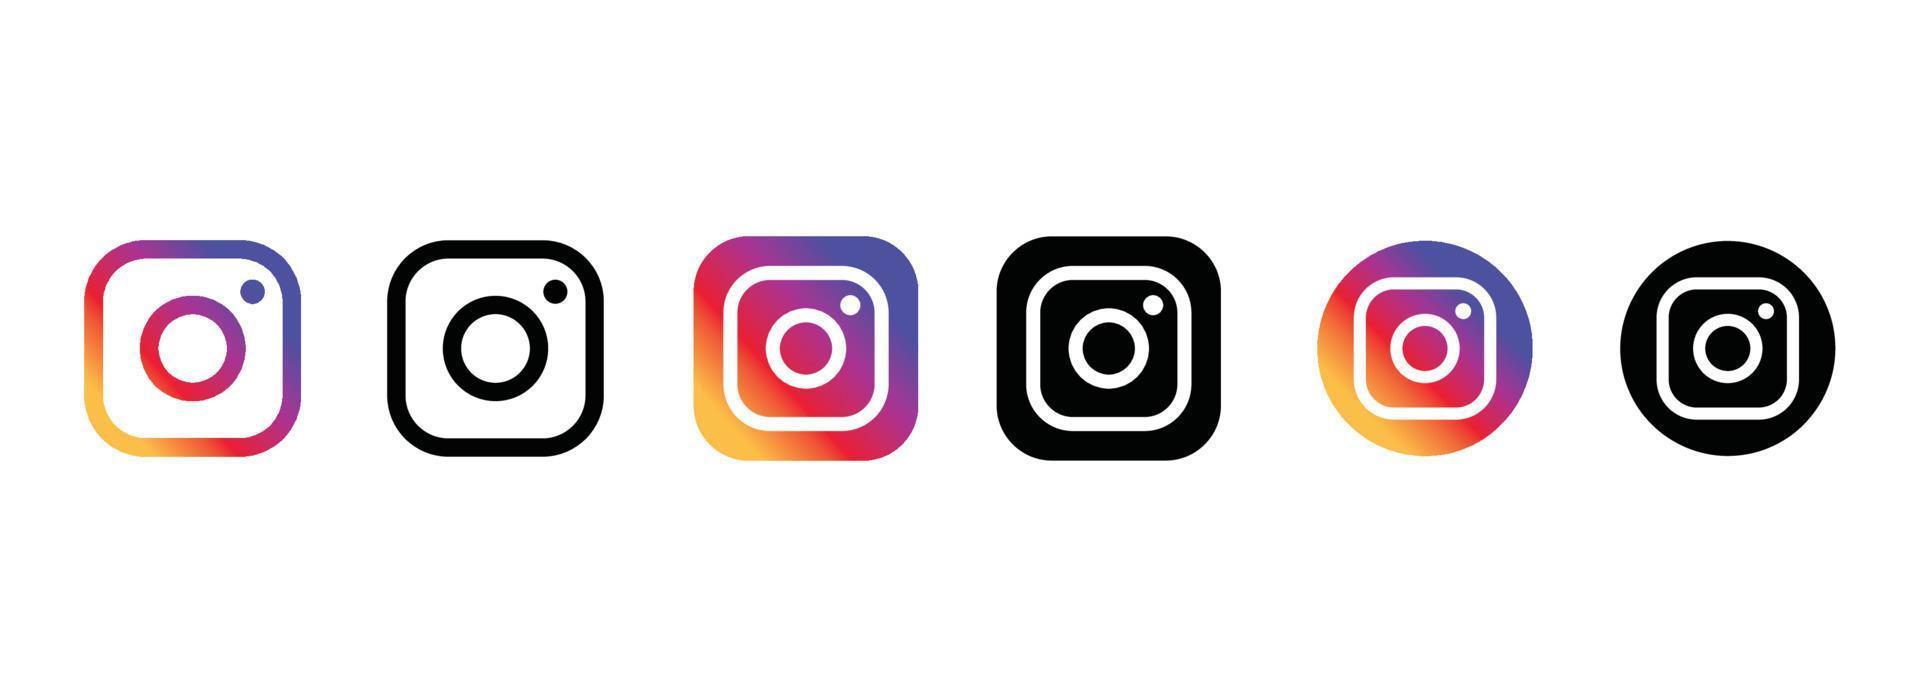 social media icon instagram logo in vlakke stijl met kleur en zwarte collectie vector